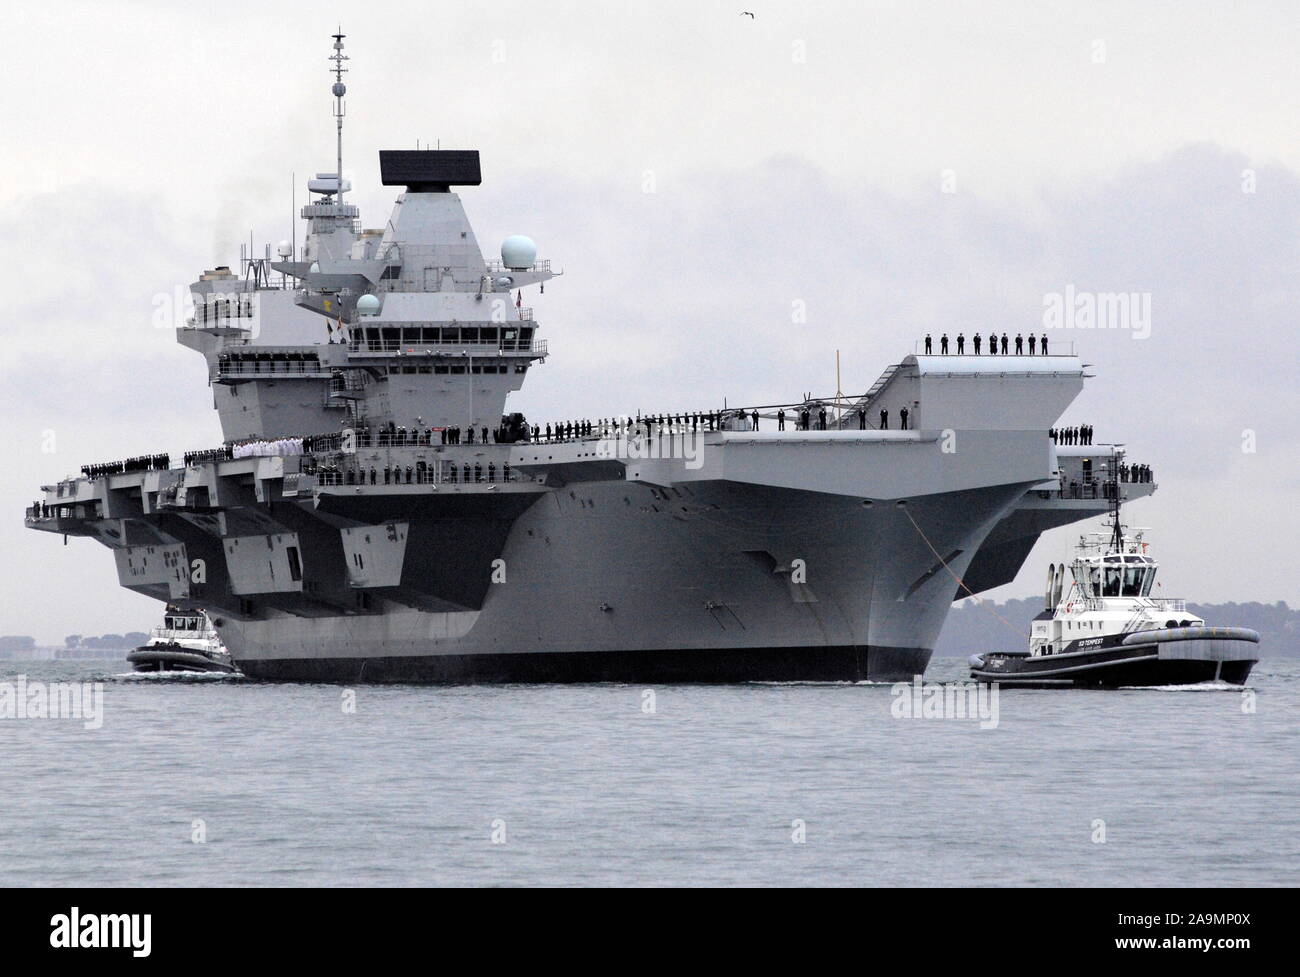 AJAXNETPHOTO. 16. AUGUST 2017. PORTSMOUTH, England. - Der größte Kriegsschiff der Royal Navy SEGEL IN HOME PORT-HMS KÖNIGIN ELIZABTH, DAS ERSTE VON ZWEI 65.000 Tonnen, 900 m lang, STATE-OF-THE-ART FLUGZEUGTRÄGER segelte in Portsmouth Naval Base in den frühen Stunden des Morgens sanft drückte und drängte durch sechs Schleppern in ihre neuen Liegeplatz auf der Princess Royal Jetty. Die £ 3 Mrd. FFR, das größte Kriegsschiff, das jemals gebaut wurde für die Royal Navy, KAM AN BEI IHR ZU HAUSE PORT ZWEI TAGE VOR IHREM URSPRÜNGLICHEN ZEITPLAN angekommen. Foto: Jonathan Eastland/AJAX REF: D 171608 6779 Stockfoto